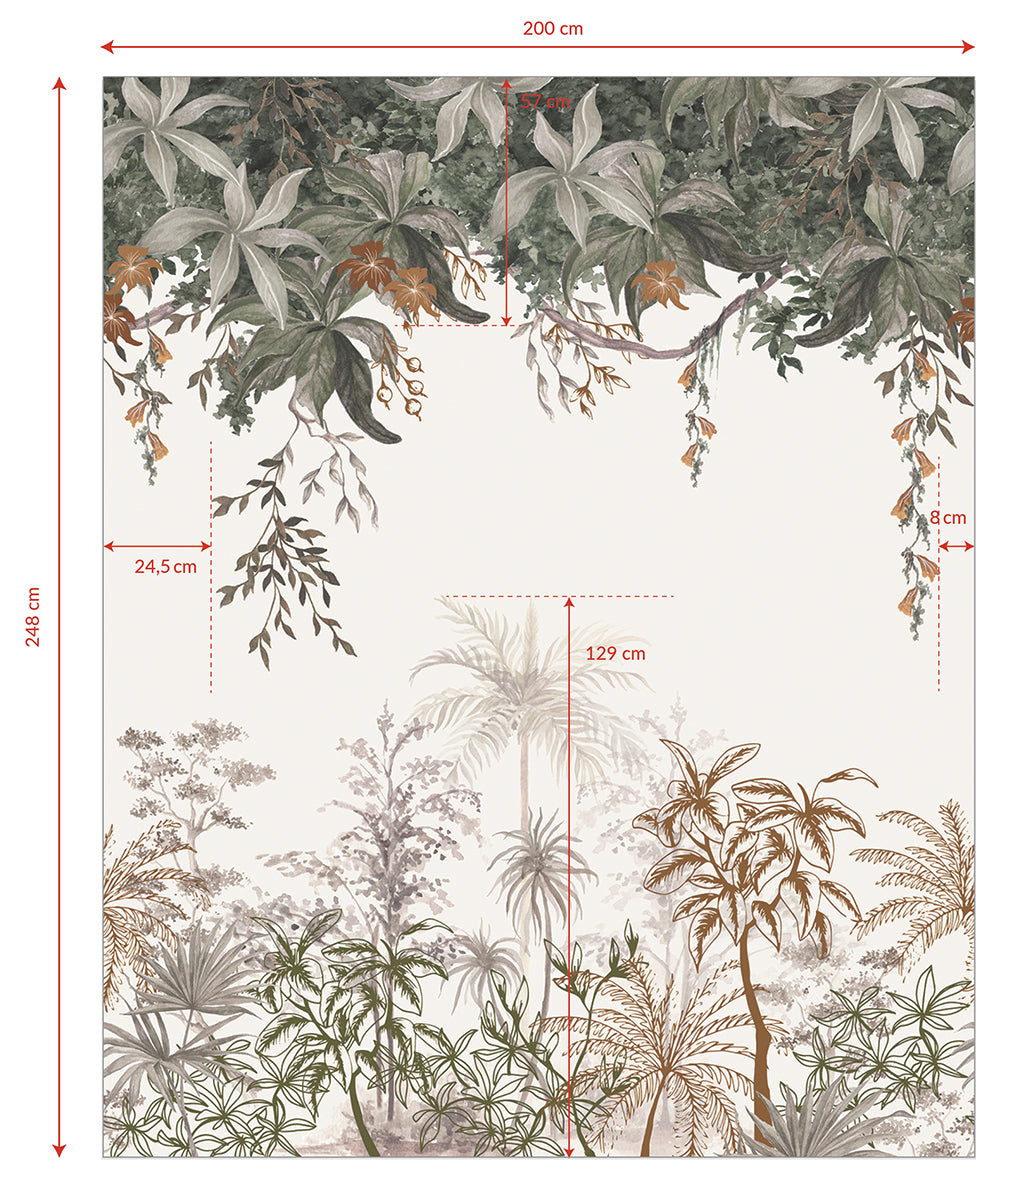 Lilipinso Wallpaper Mural (200 X 248 Cm) - Jungle Landscape